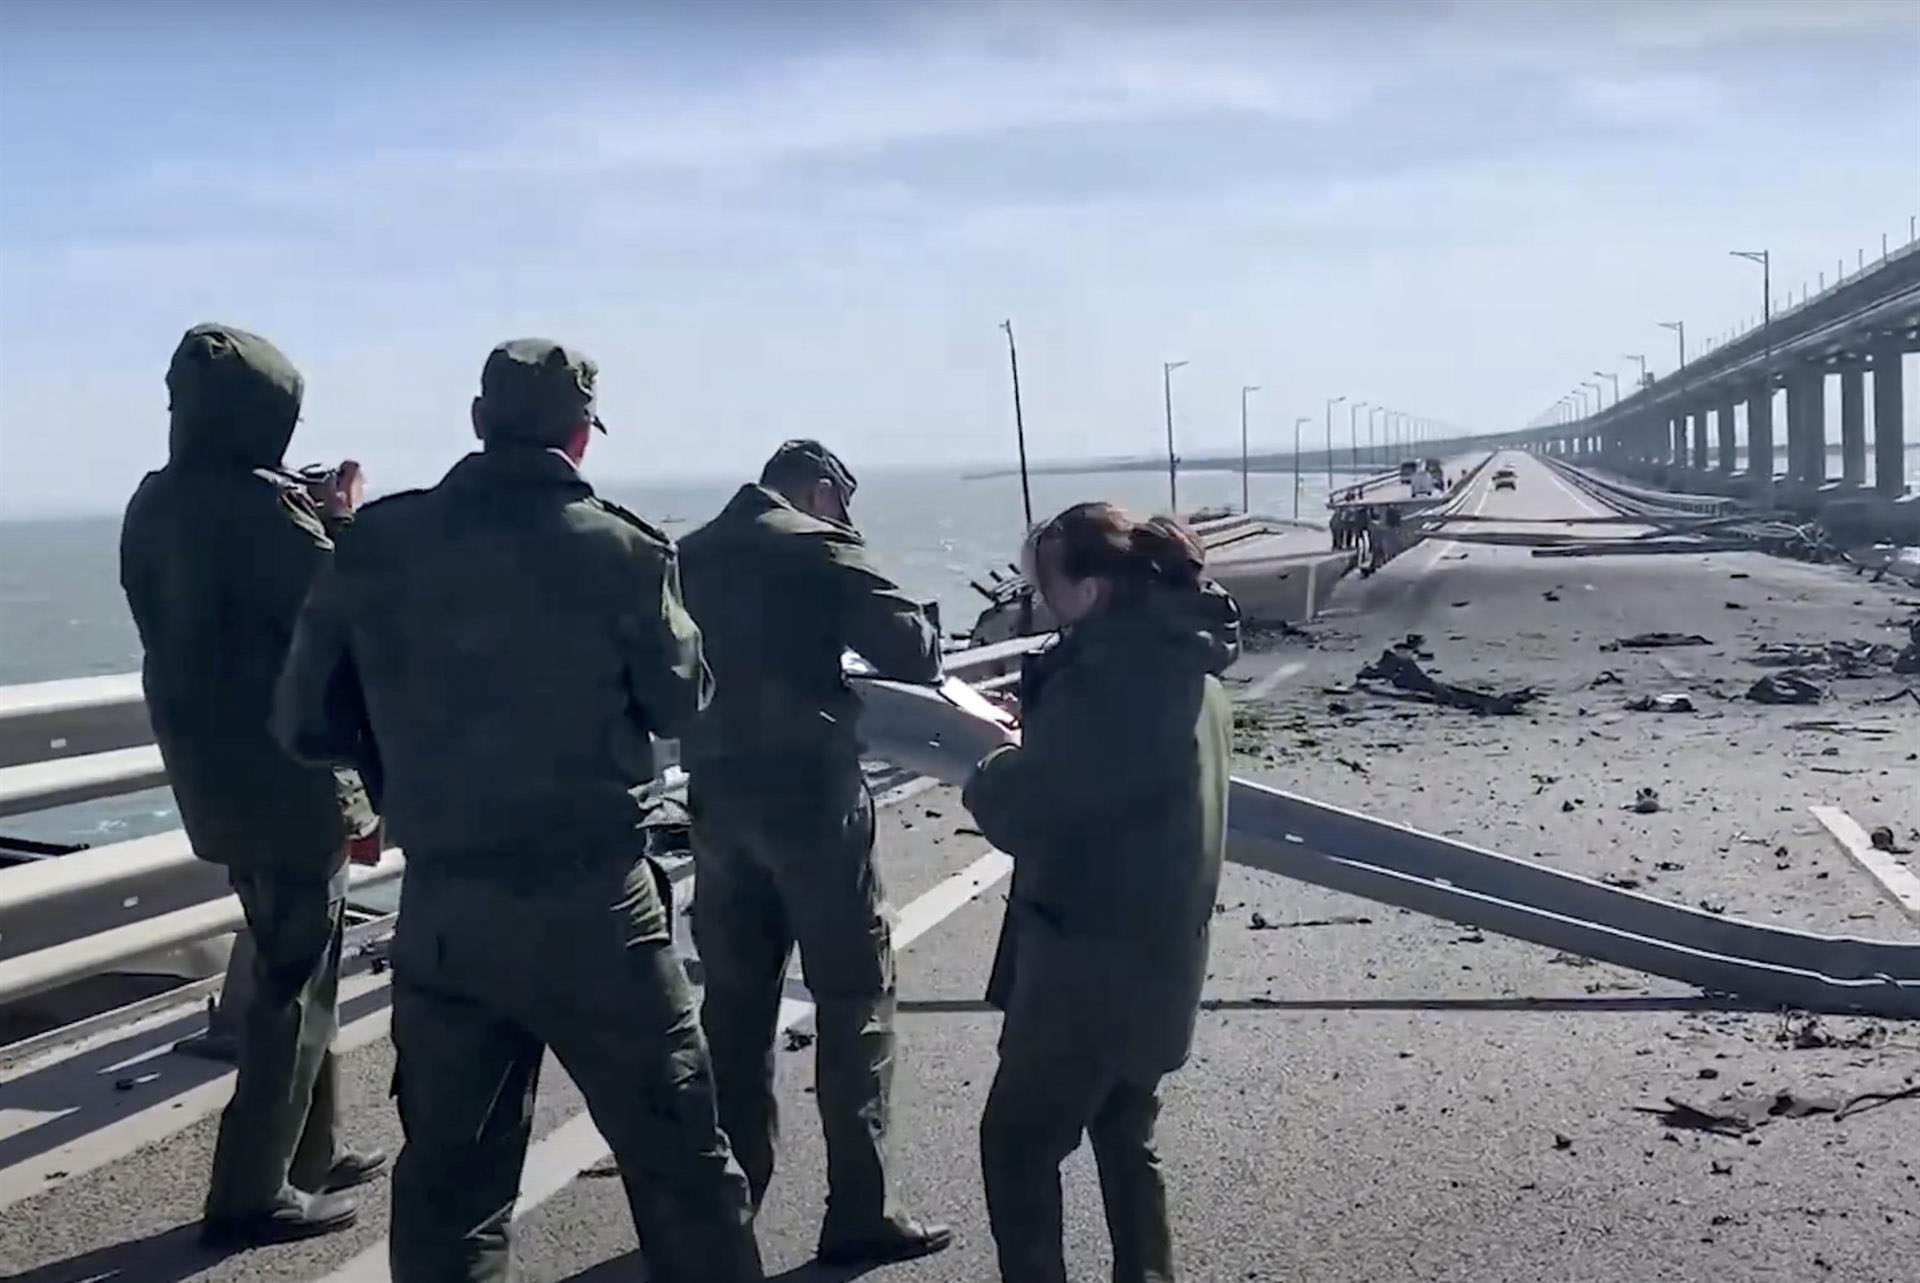 “La joya de Putin”: explosión destruye parte del puente que une Crimea con Rusia